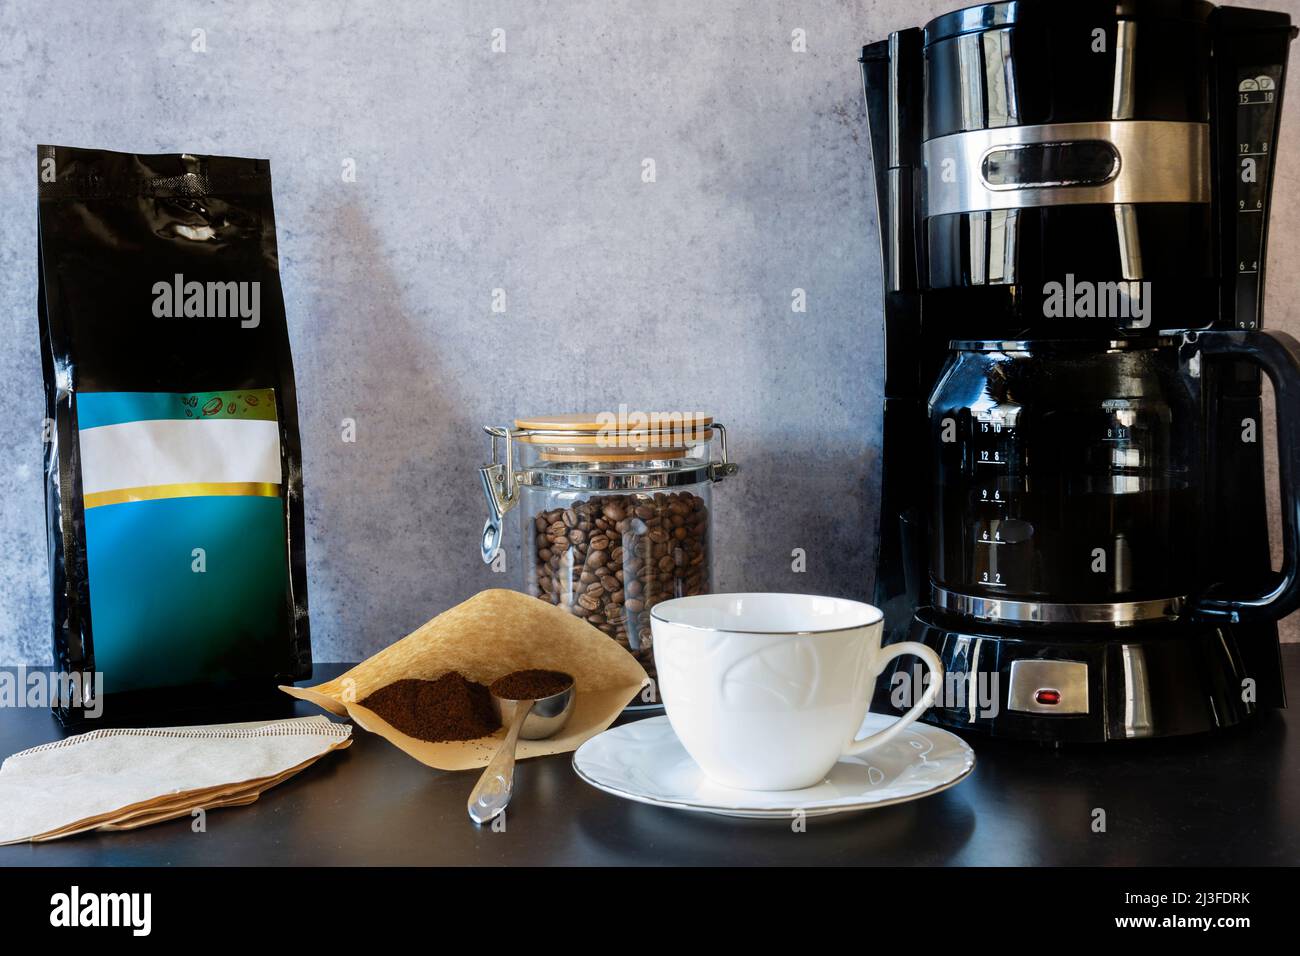 https://c8.alamy.com/compes/2j3fdrk/maquina-de-cafe-una-taza-un-tarro-lleno-de-granos-de-cafe-y-una-cuchara-de-cafe-de-filtro-una-mano-que-vierte-el-cafe-de-filtro-2j3fdrk.jpg